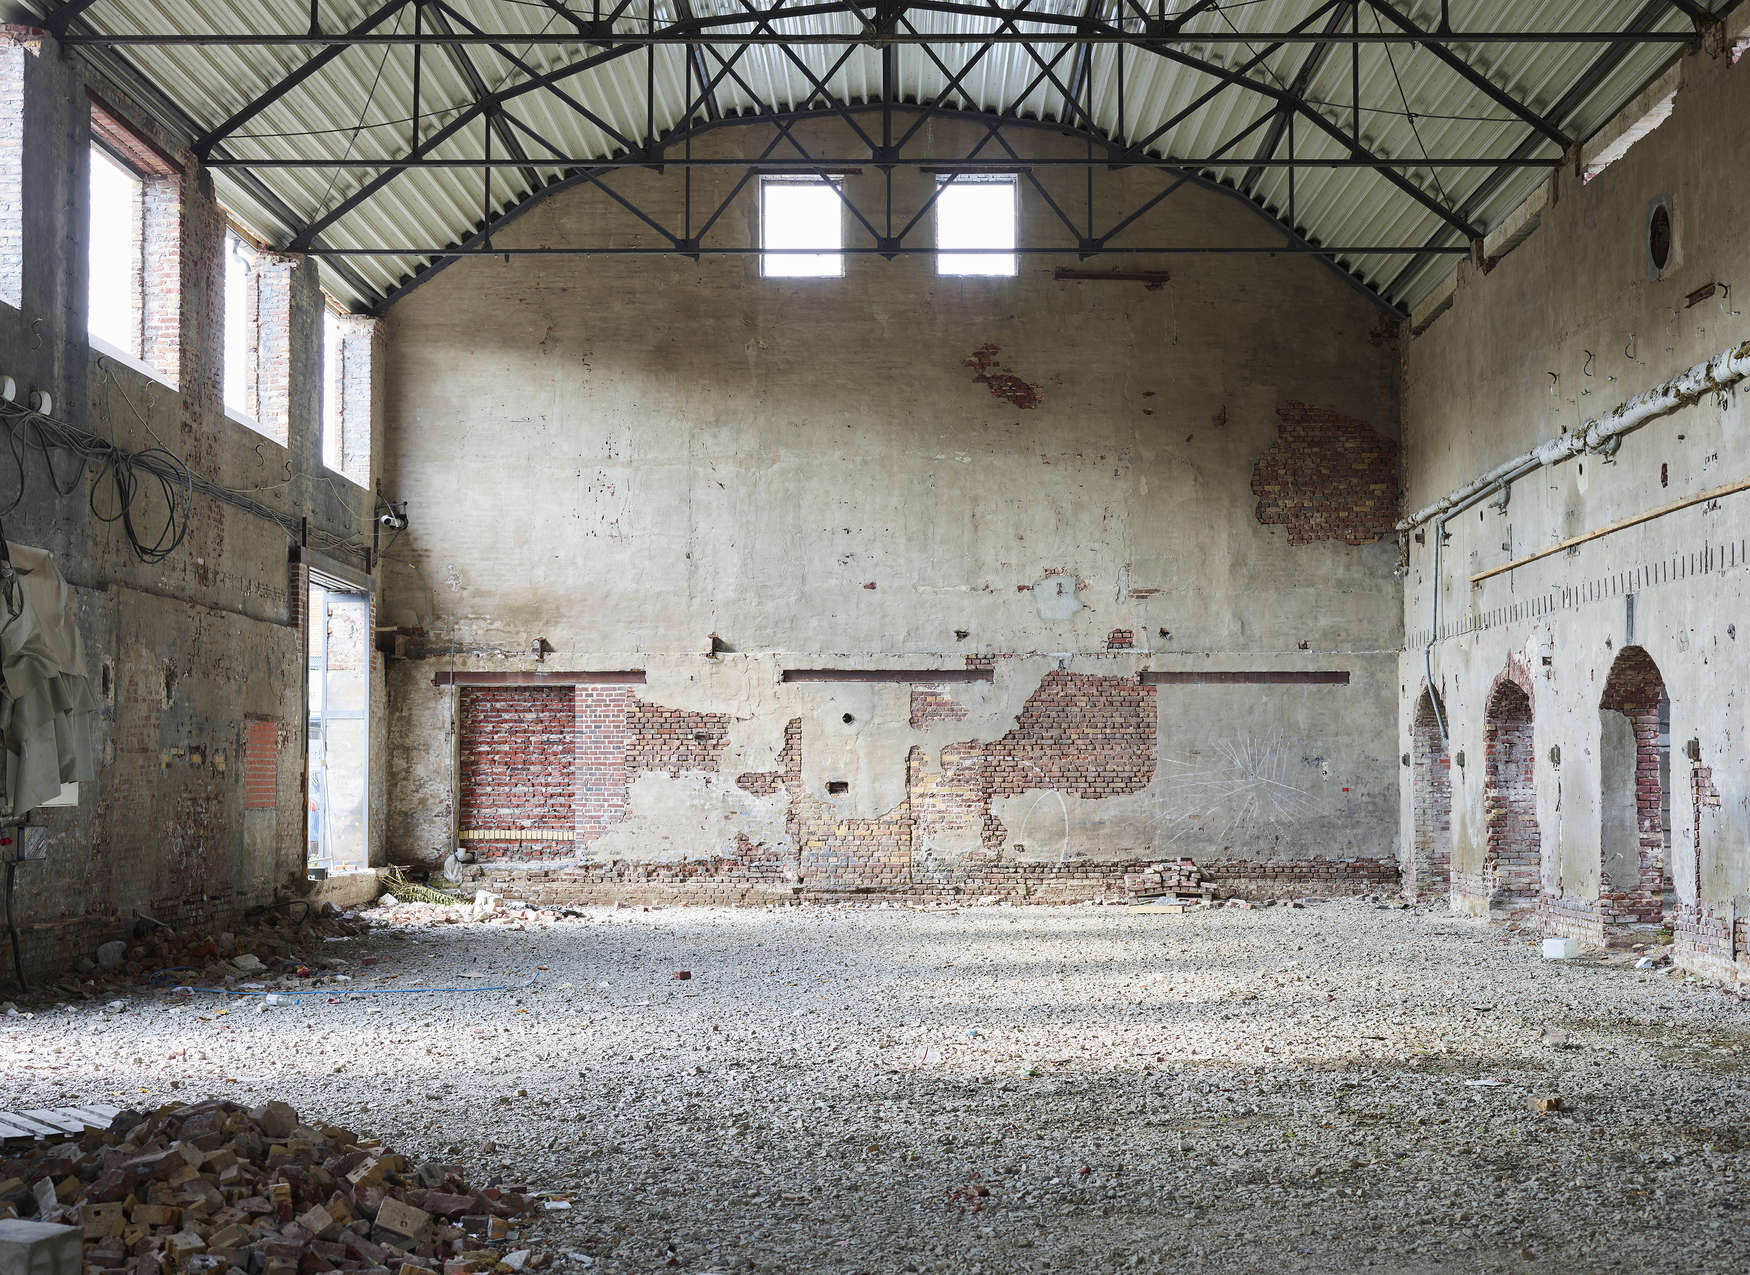             Fototapete mit verlassener Industriehalle – Beige, Braun
        